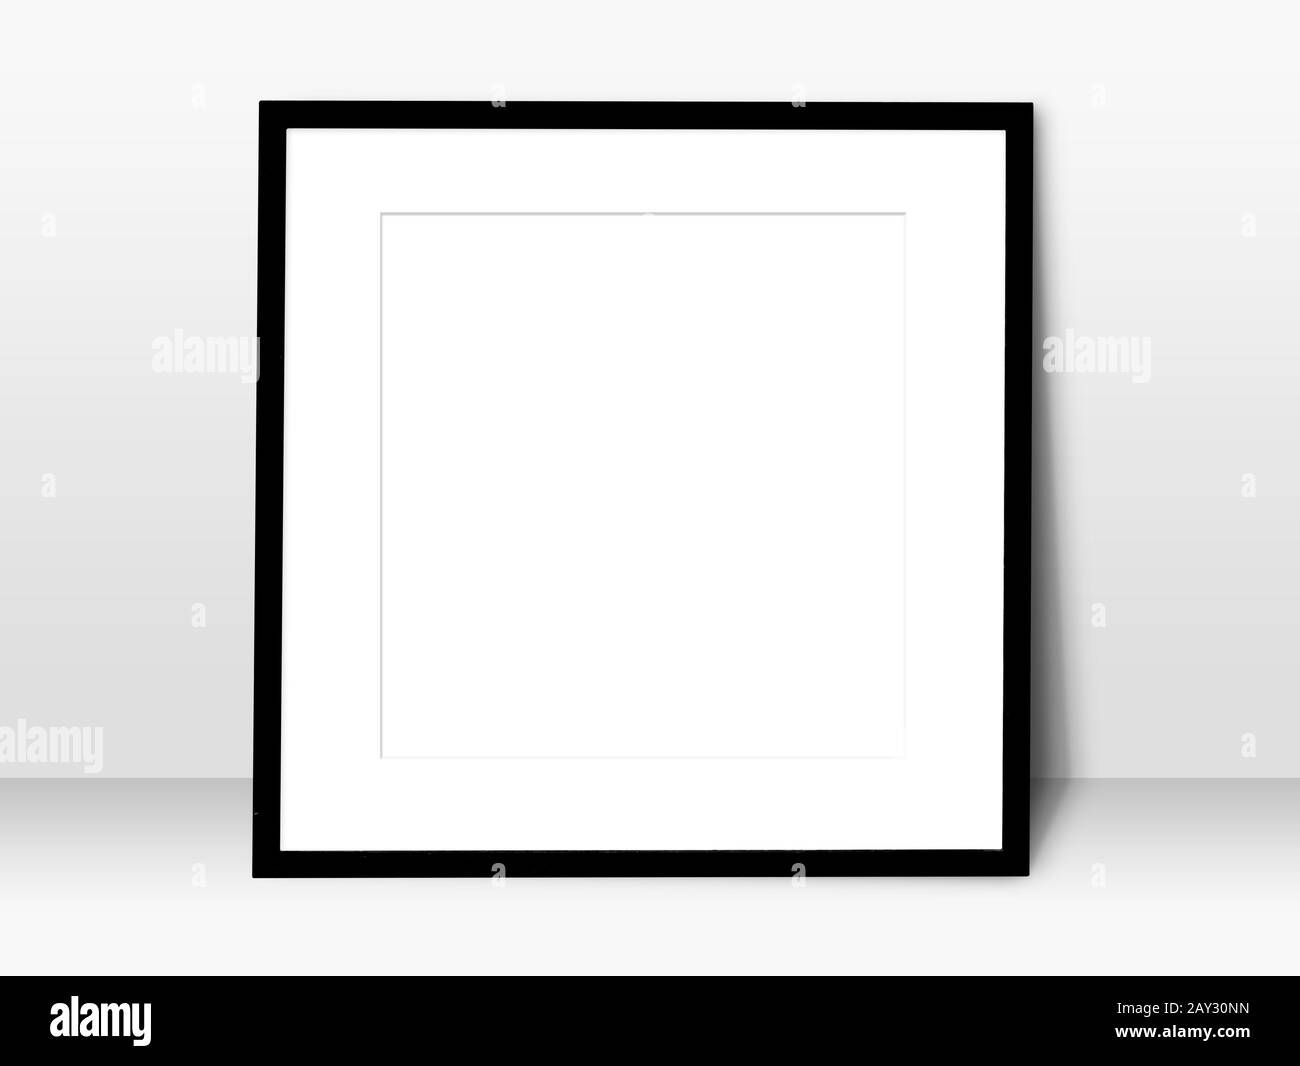 spazio vuoto bianco in cornice nera appoggiata contro la parete bianca. cornice bianca semplice per la presentazione o per decorare lo sfondo Foto Stock